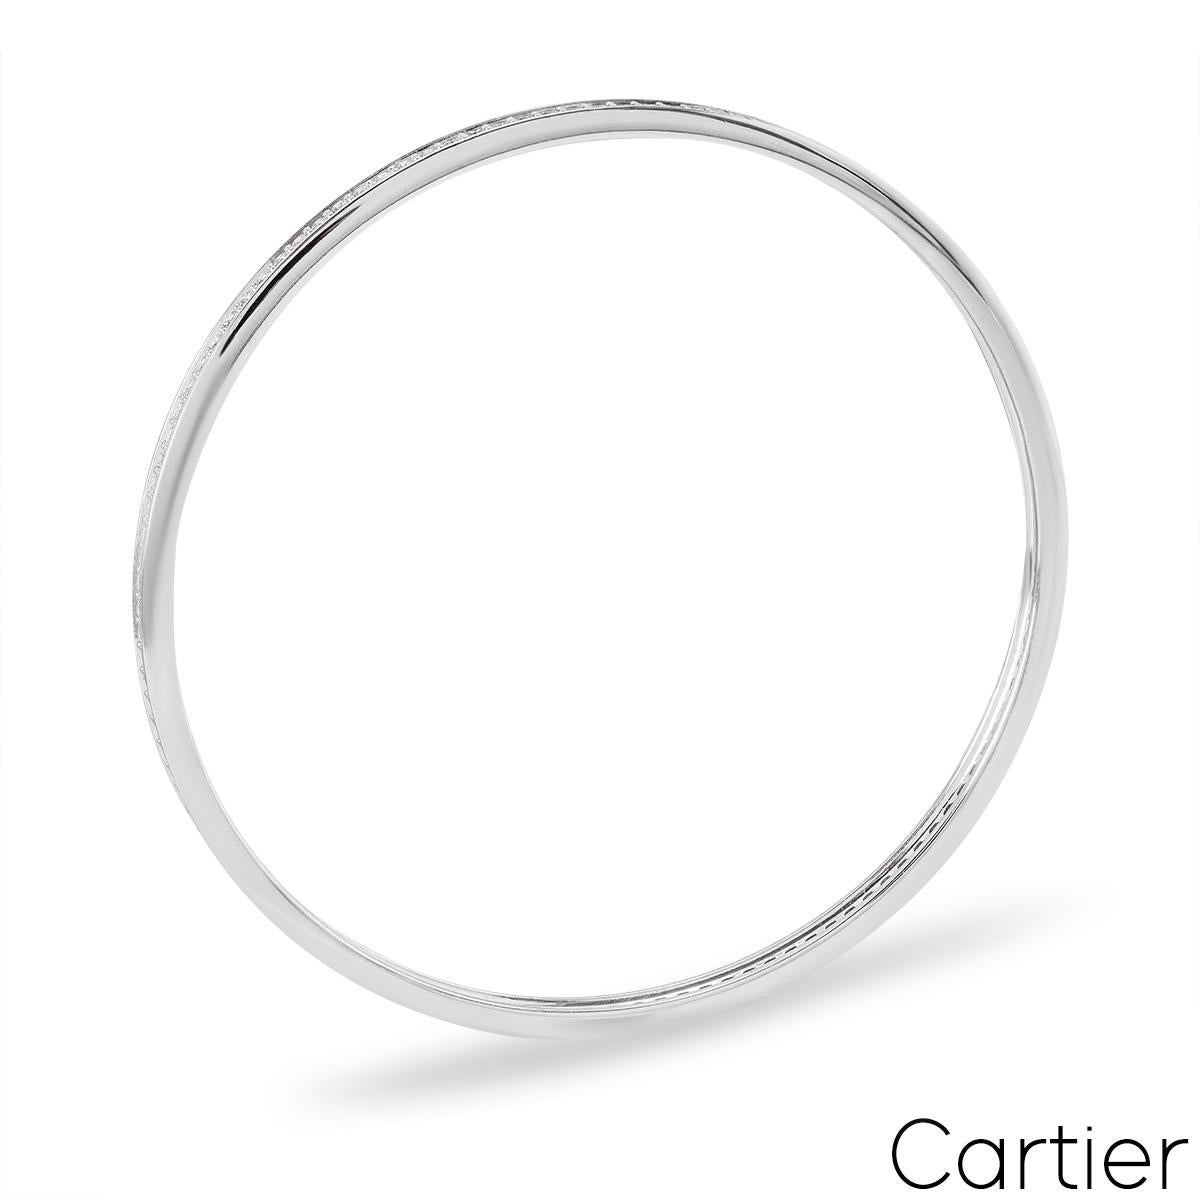 Superbe bracelet diamant Cartier en or blanc 18 carats. Le bracelet comprend un pavage complet de 116 diamants ronds de taille brillant d'un poids total d'environ 2,90 ct, de couleur F et de pureté VS. Le bracelet s'adapte à un poignet jusqu'à 20,25